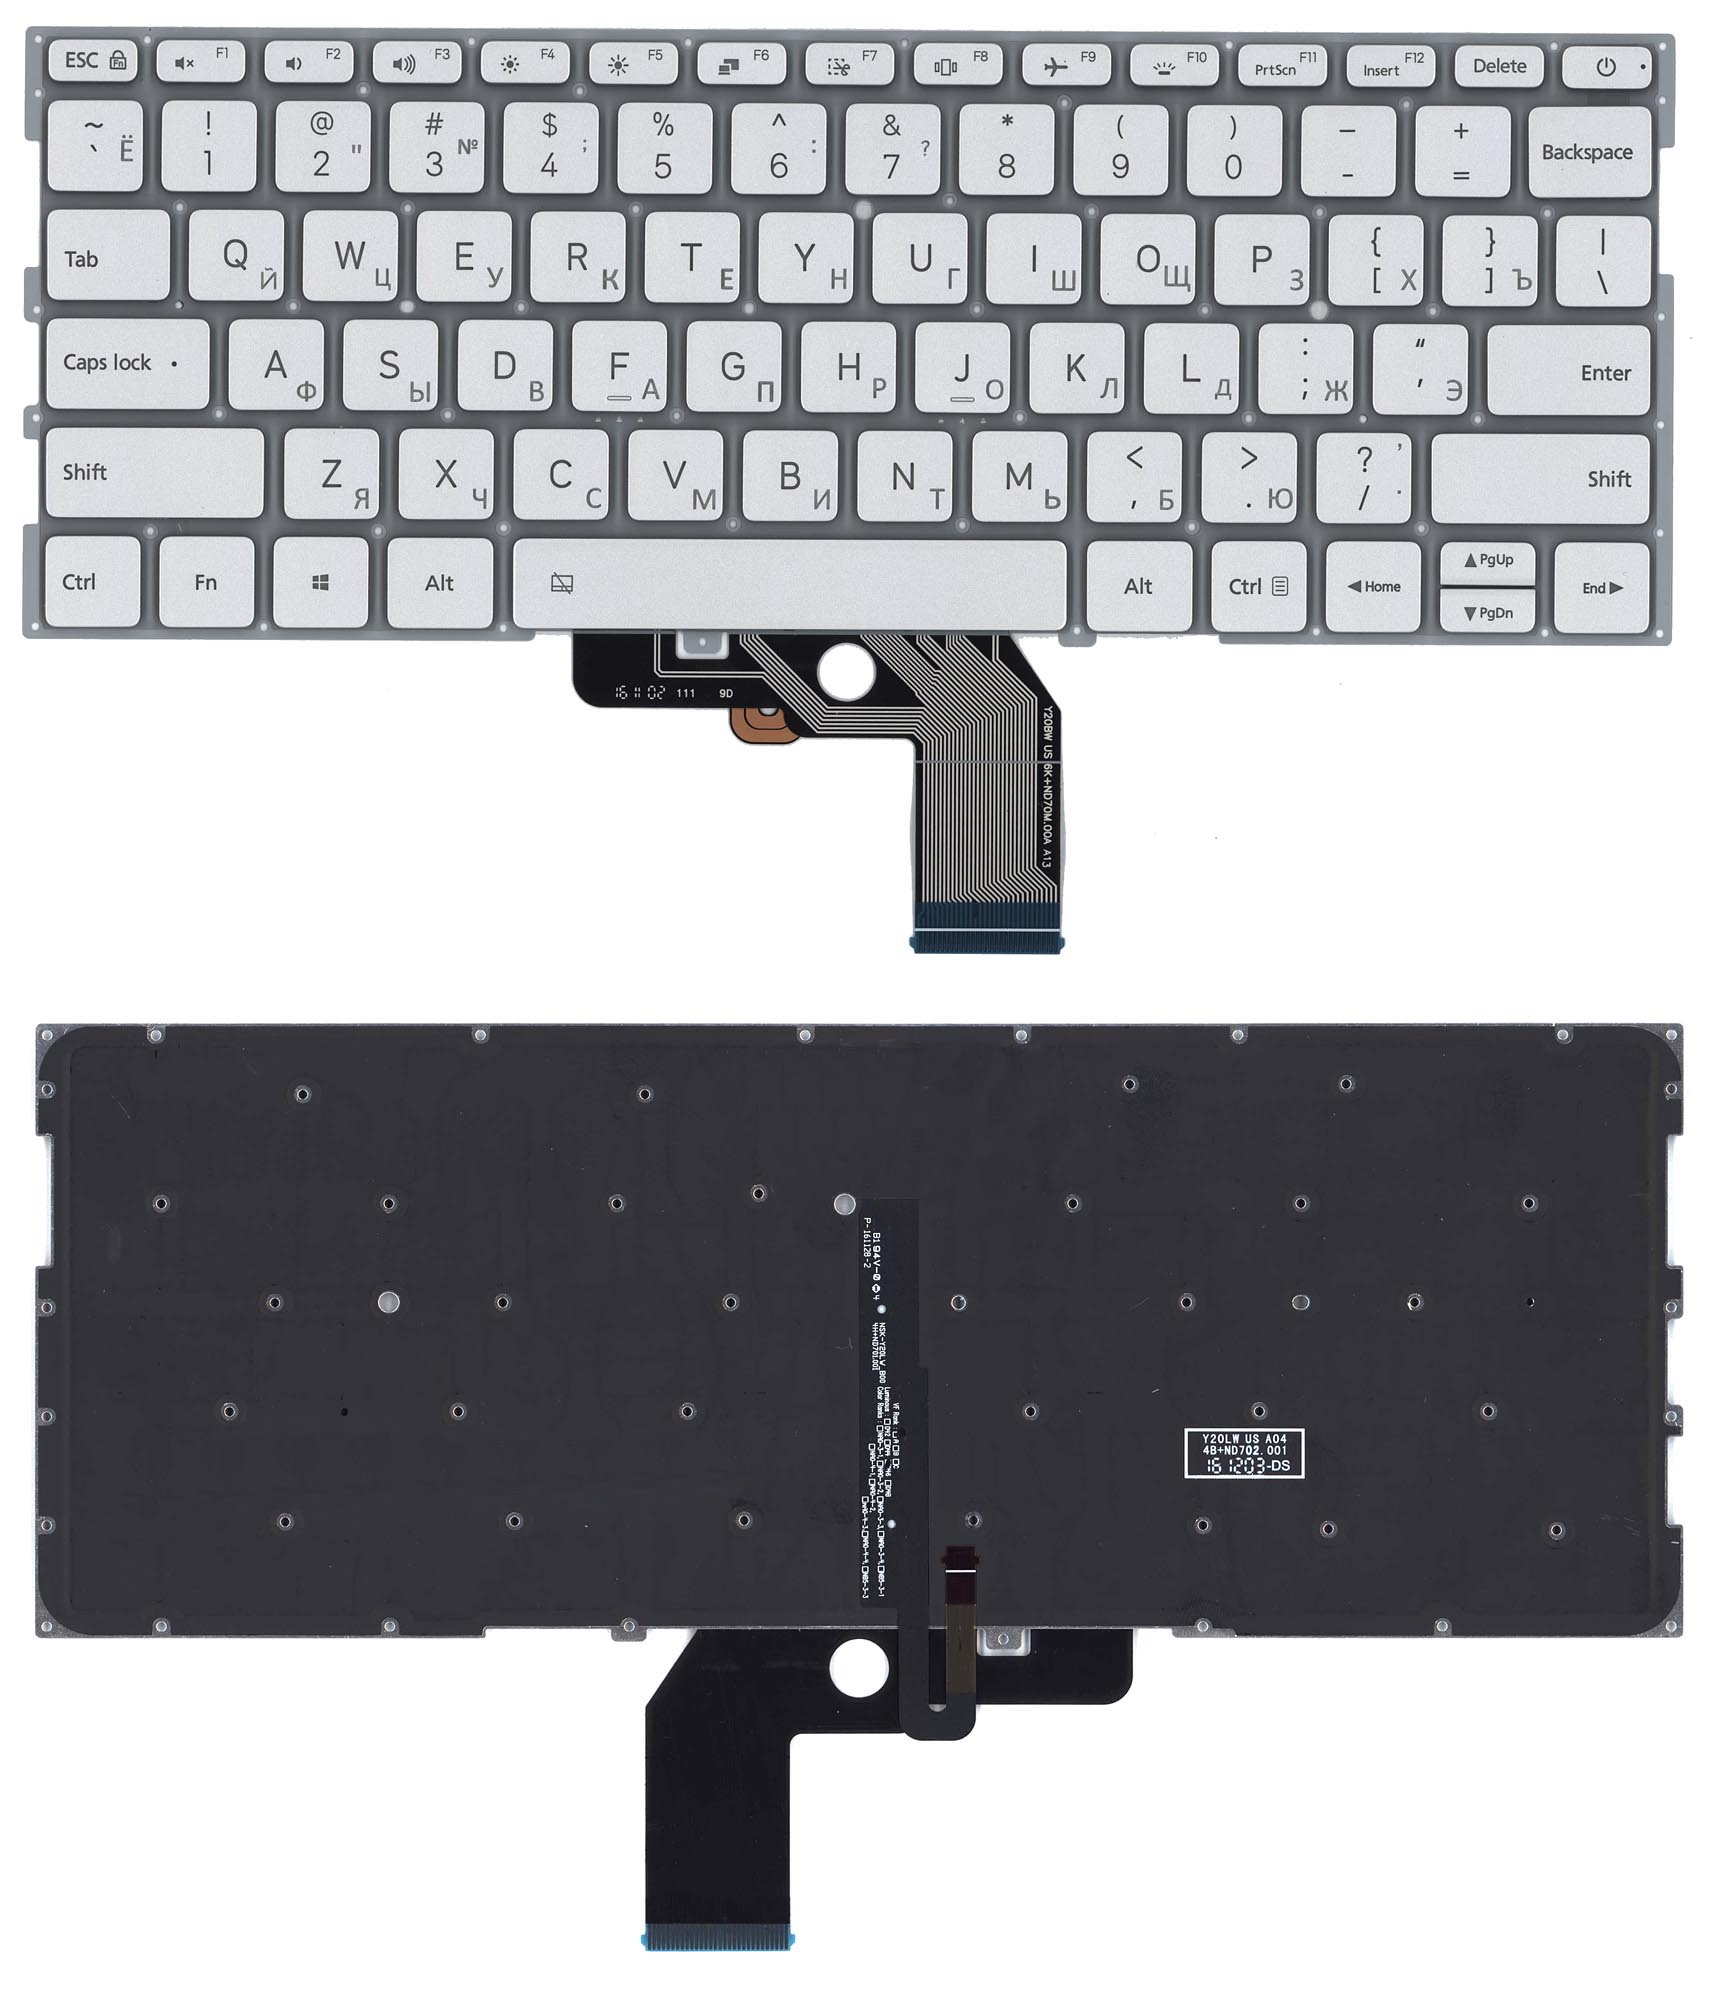 Купить клавиатура для ноутбука Xiaomi Mi Air 13.3 серебристая с подсветкой